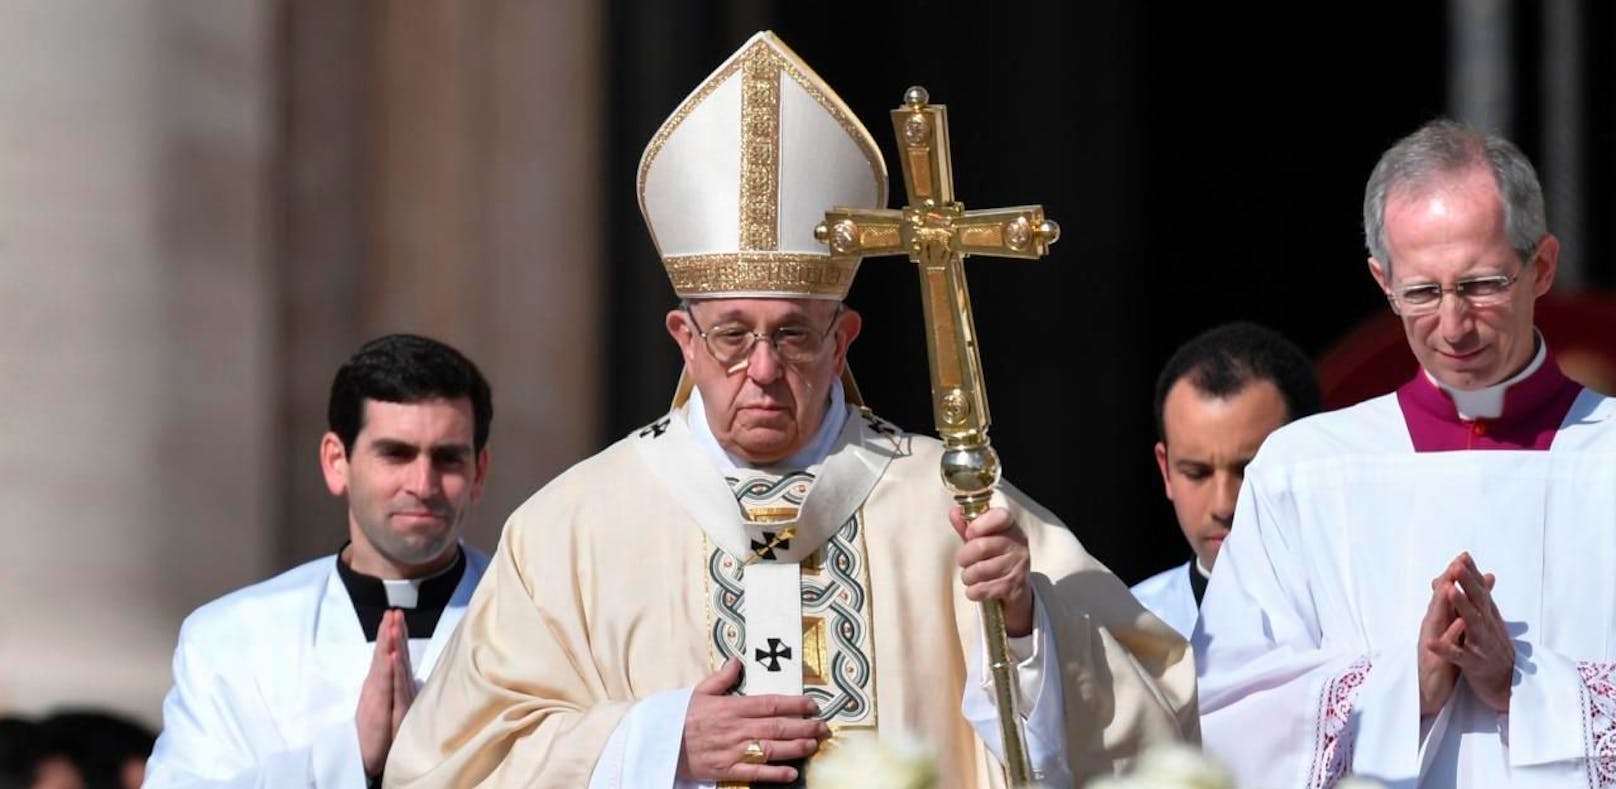 Papst fordert Menschen zu mehr Zivilcourage auf